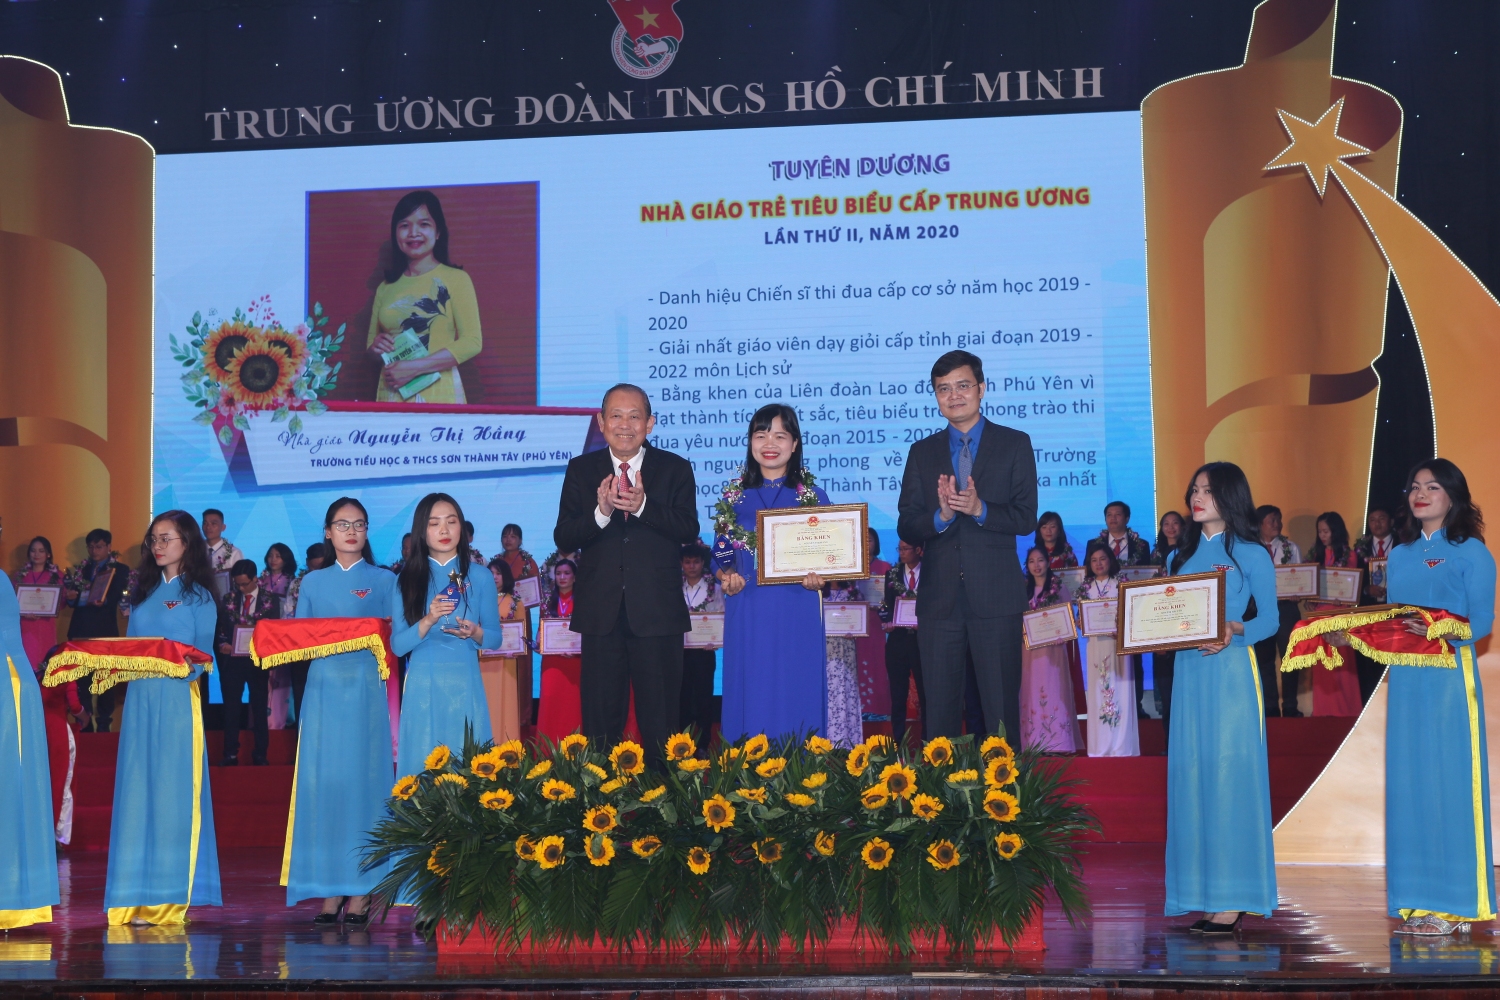 Chị Nguyễn Thị Hầng được Trung ương Đoàn tuyên dương Nhà giáo trẻ tiêu biểu cấp Trung ương lần thứ II, năm 2020.